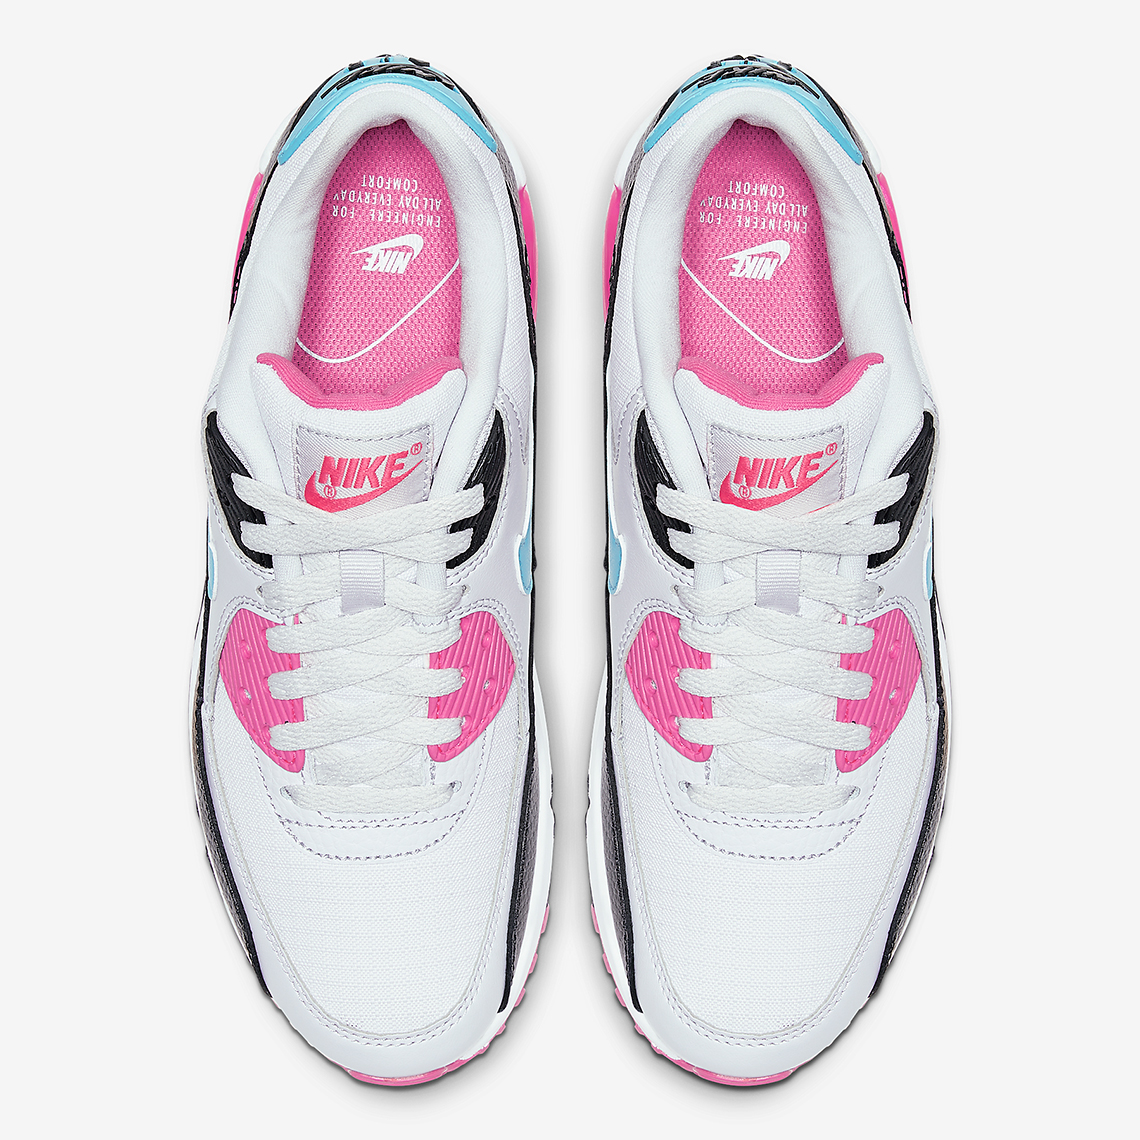 koffer weekend levering aan huis Nike Air Max 90 Pink Teal South Beach | SneakerNews.com